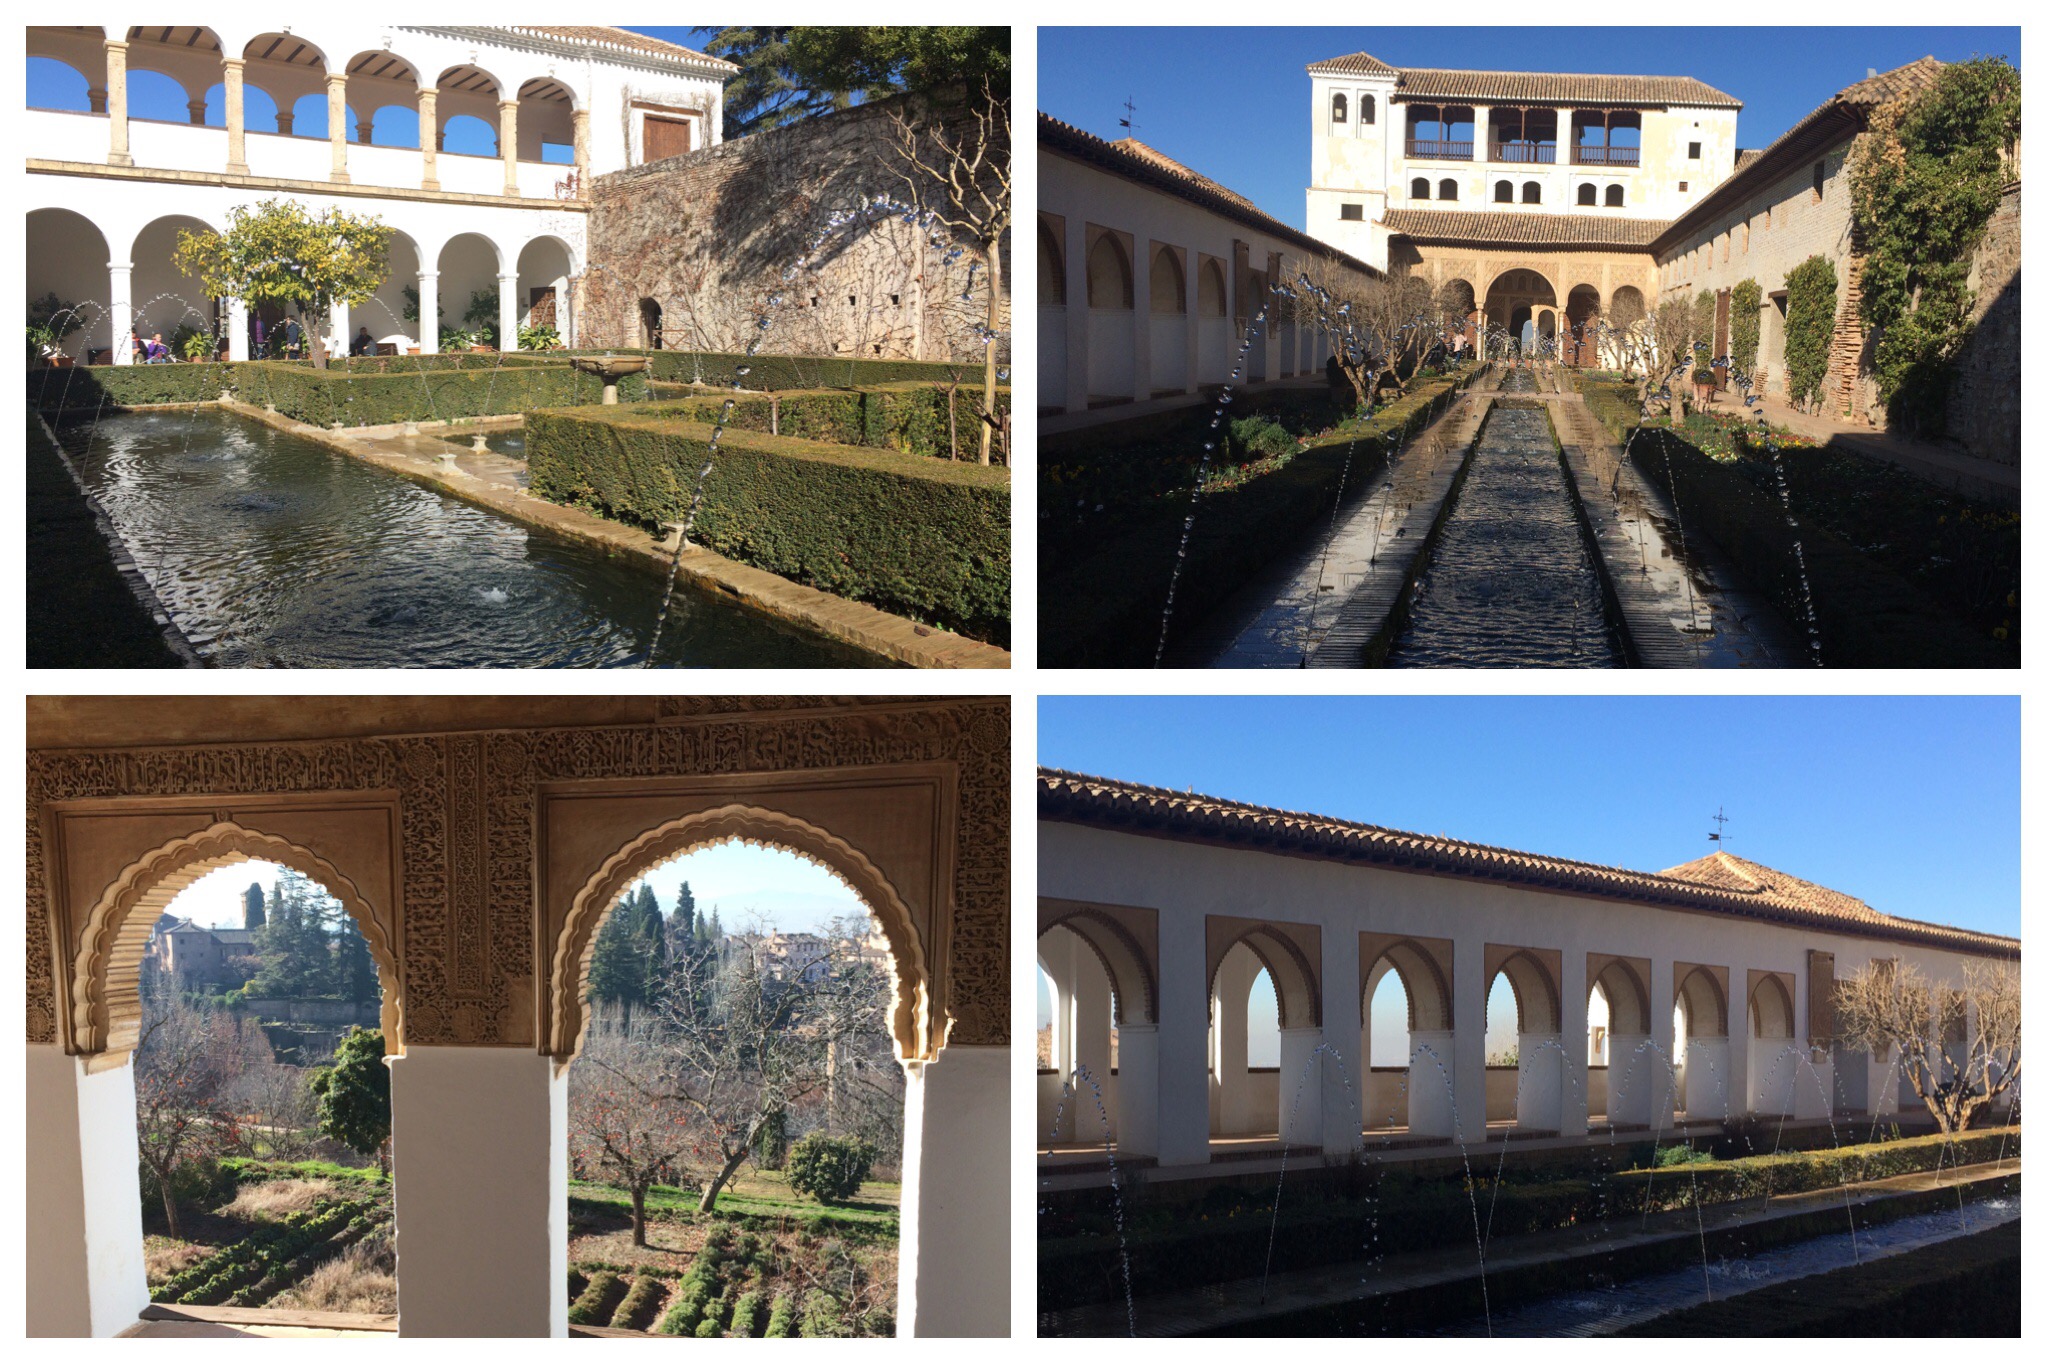 Alhambra Granada Spain - Generalife